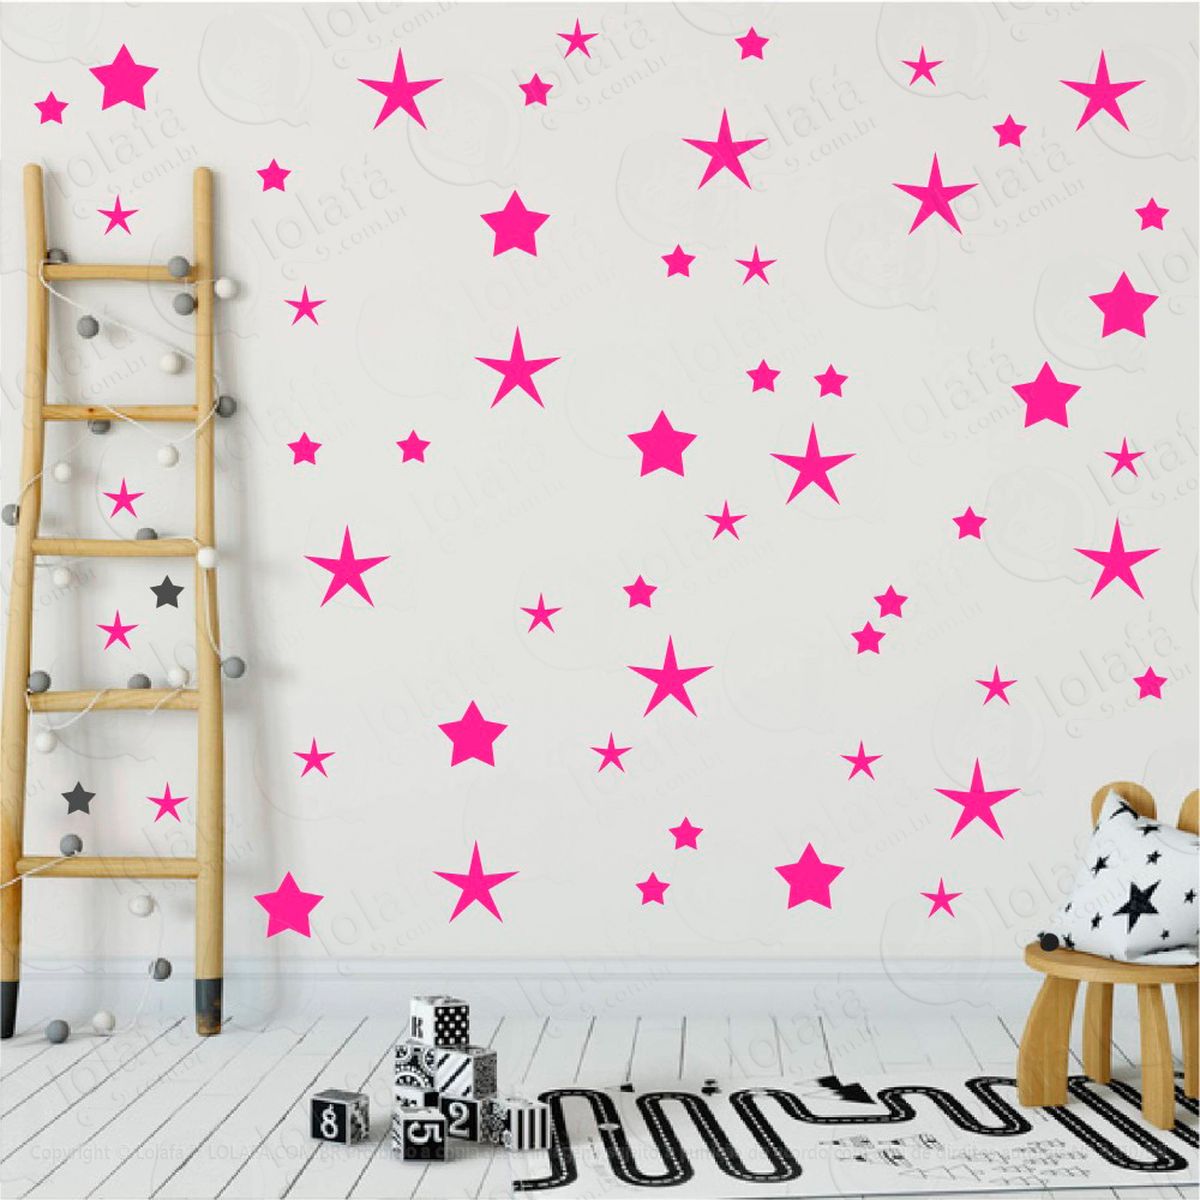 adesivos estrelas 90 peças adesivos para quarto de bebê infantil - mod:24